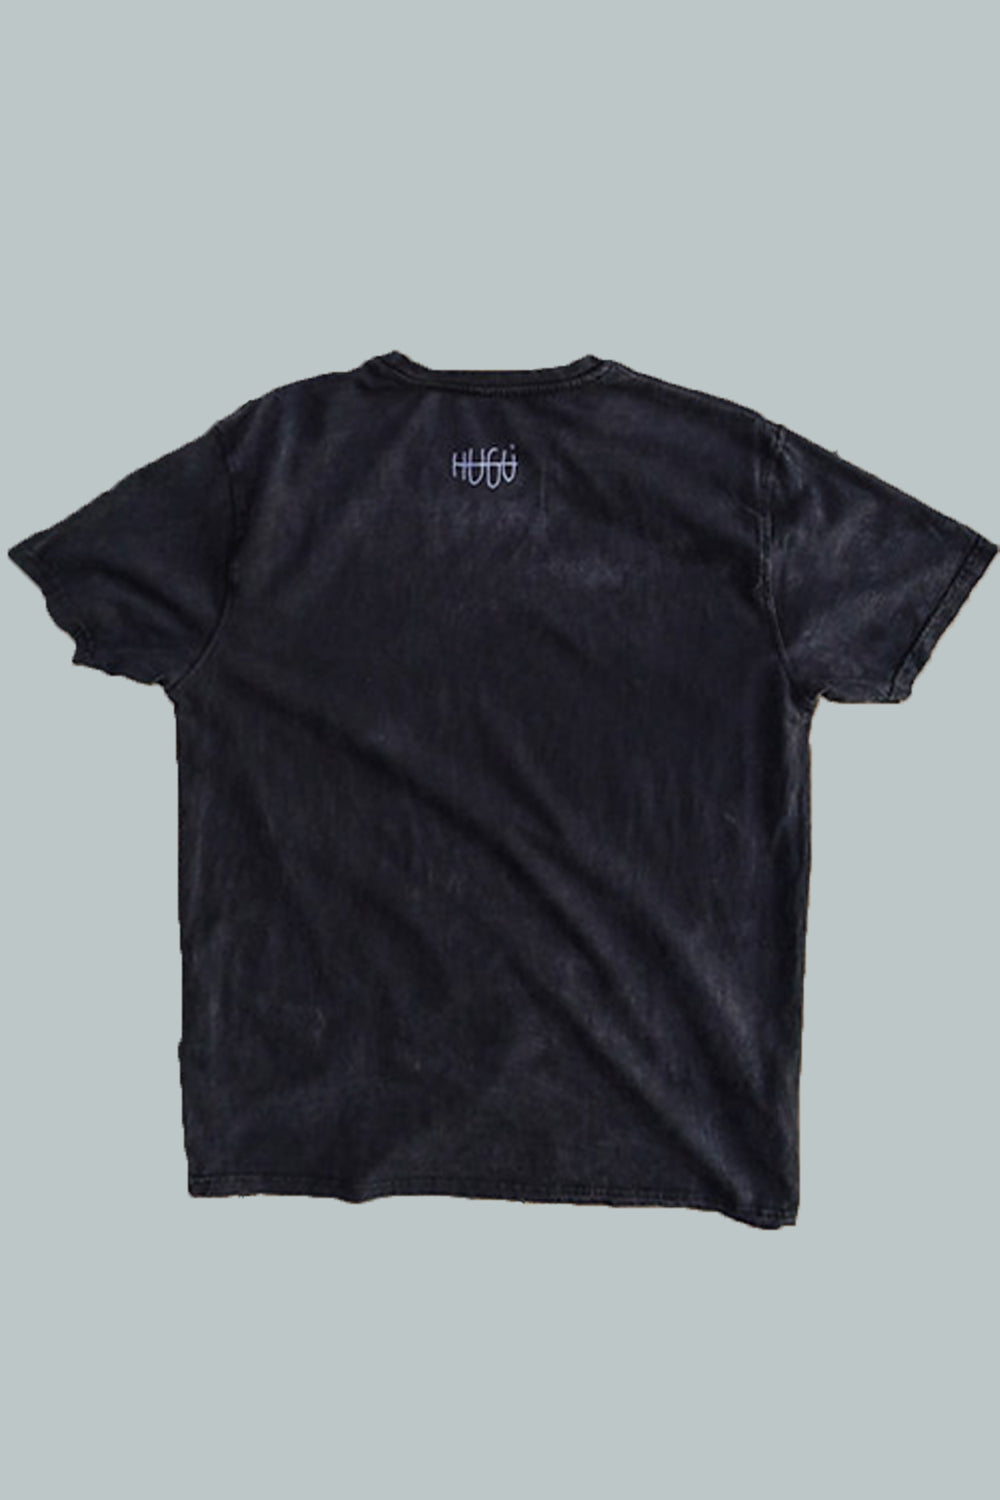 imagen de espalda de producto de la camiseta muyayo en negro pizarra